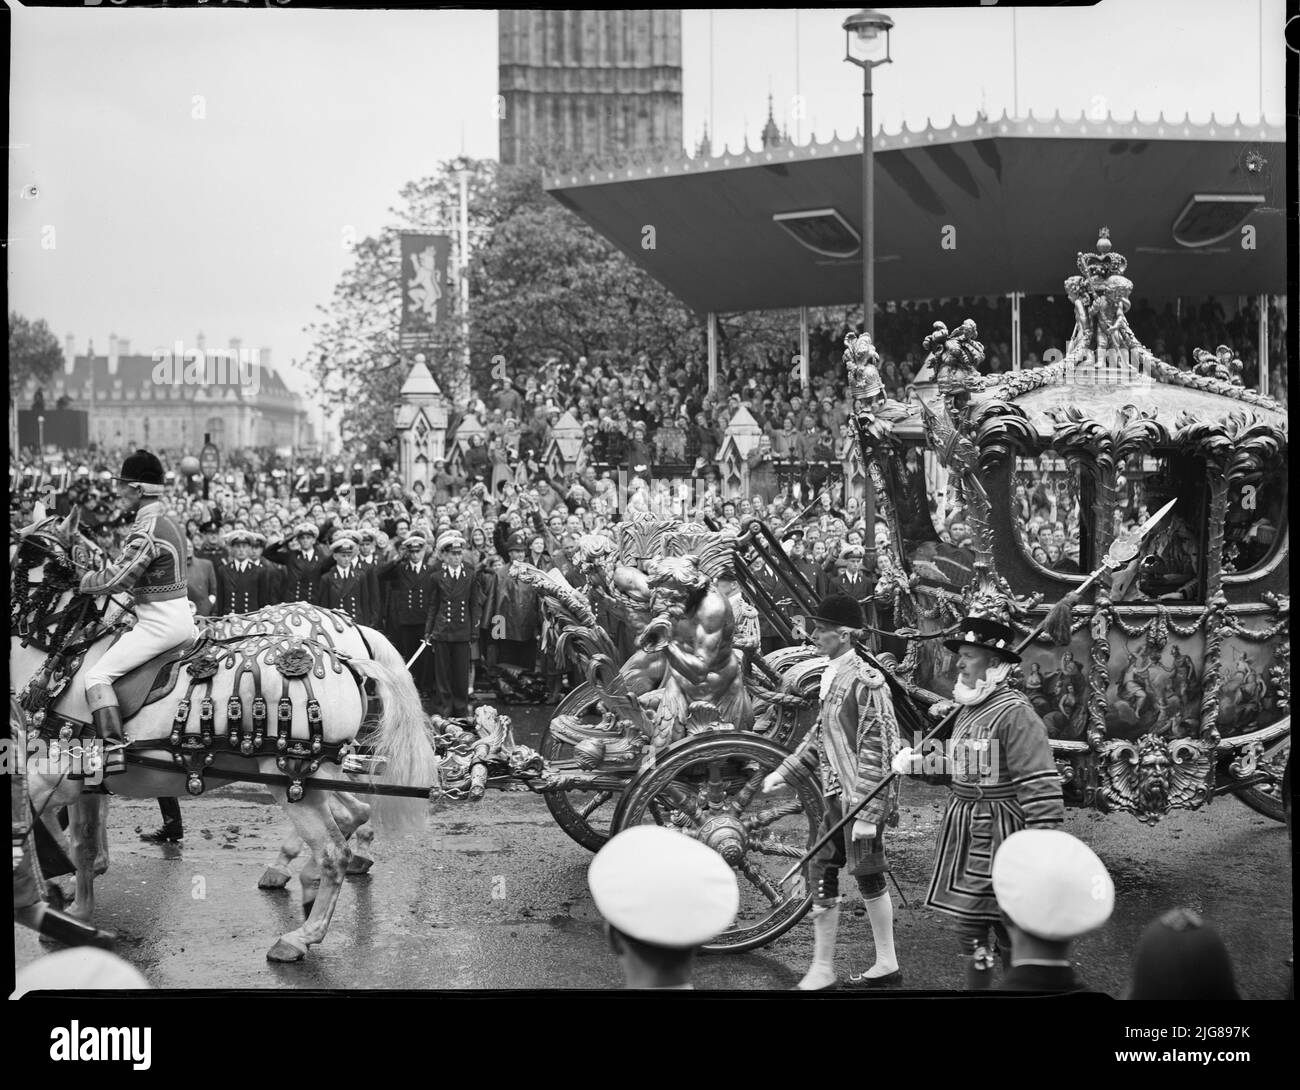 Krönung von Königin Elizabeth II., Parliament Square, City of Westminster, Greater London Authority, 02-06-1953. Menschenmassen auf dem Parliament Square beobachten, wie der Gold State Coach, der Königin Elizabeth II. Trägt, während der Krönungsprozession vorbeifährt. Stockfoto